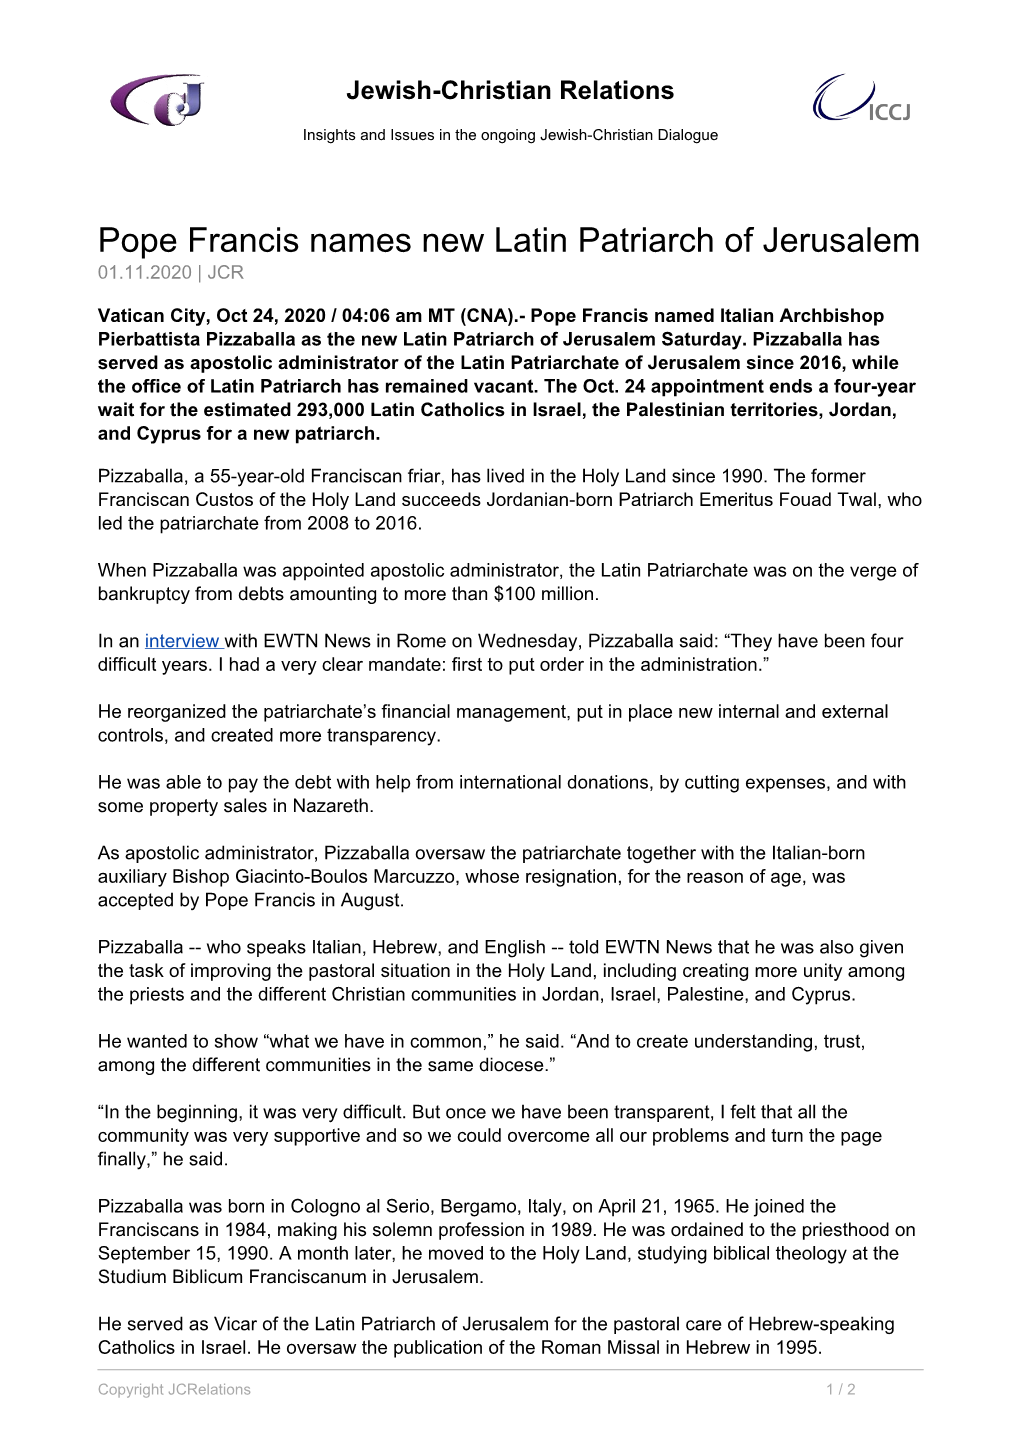 Pope Francis Names New Latin Patriarch of Jerusalem 01.11.2020 | JCR